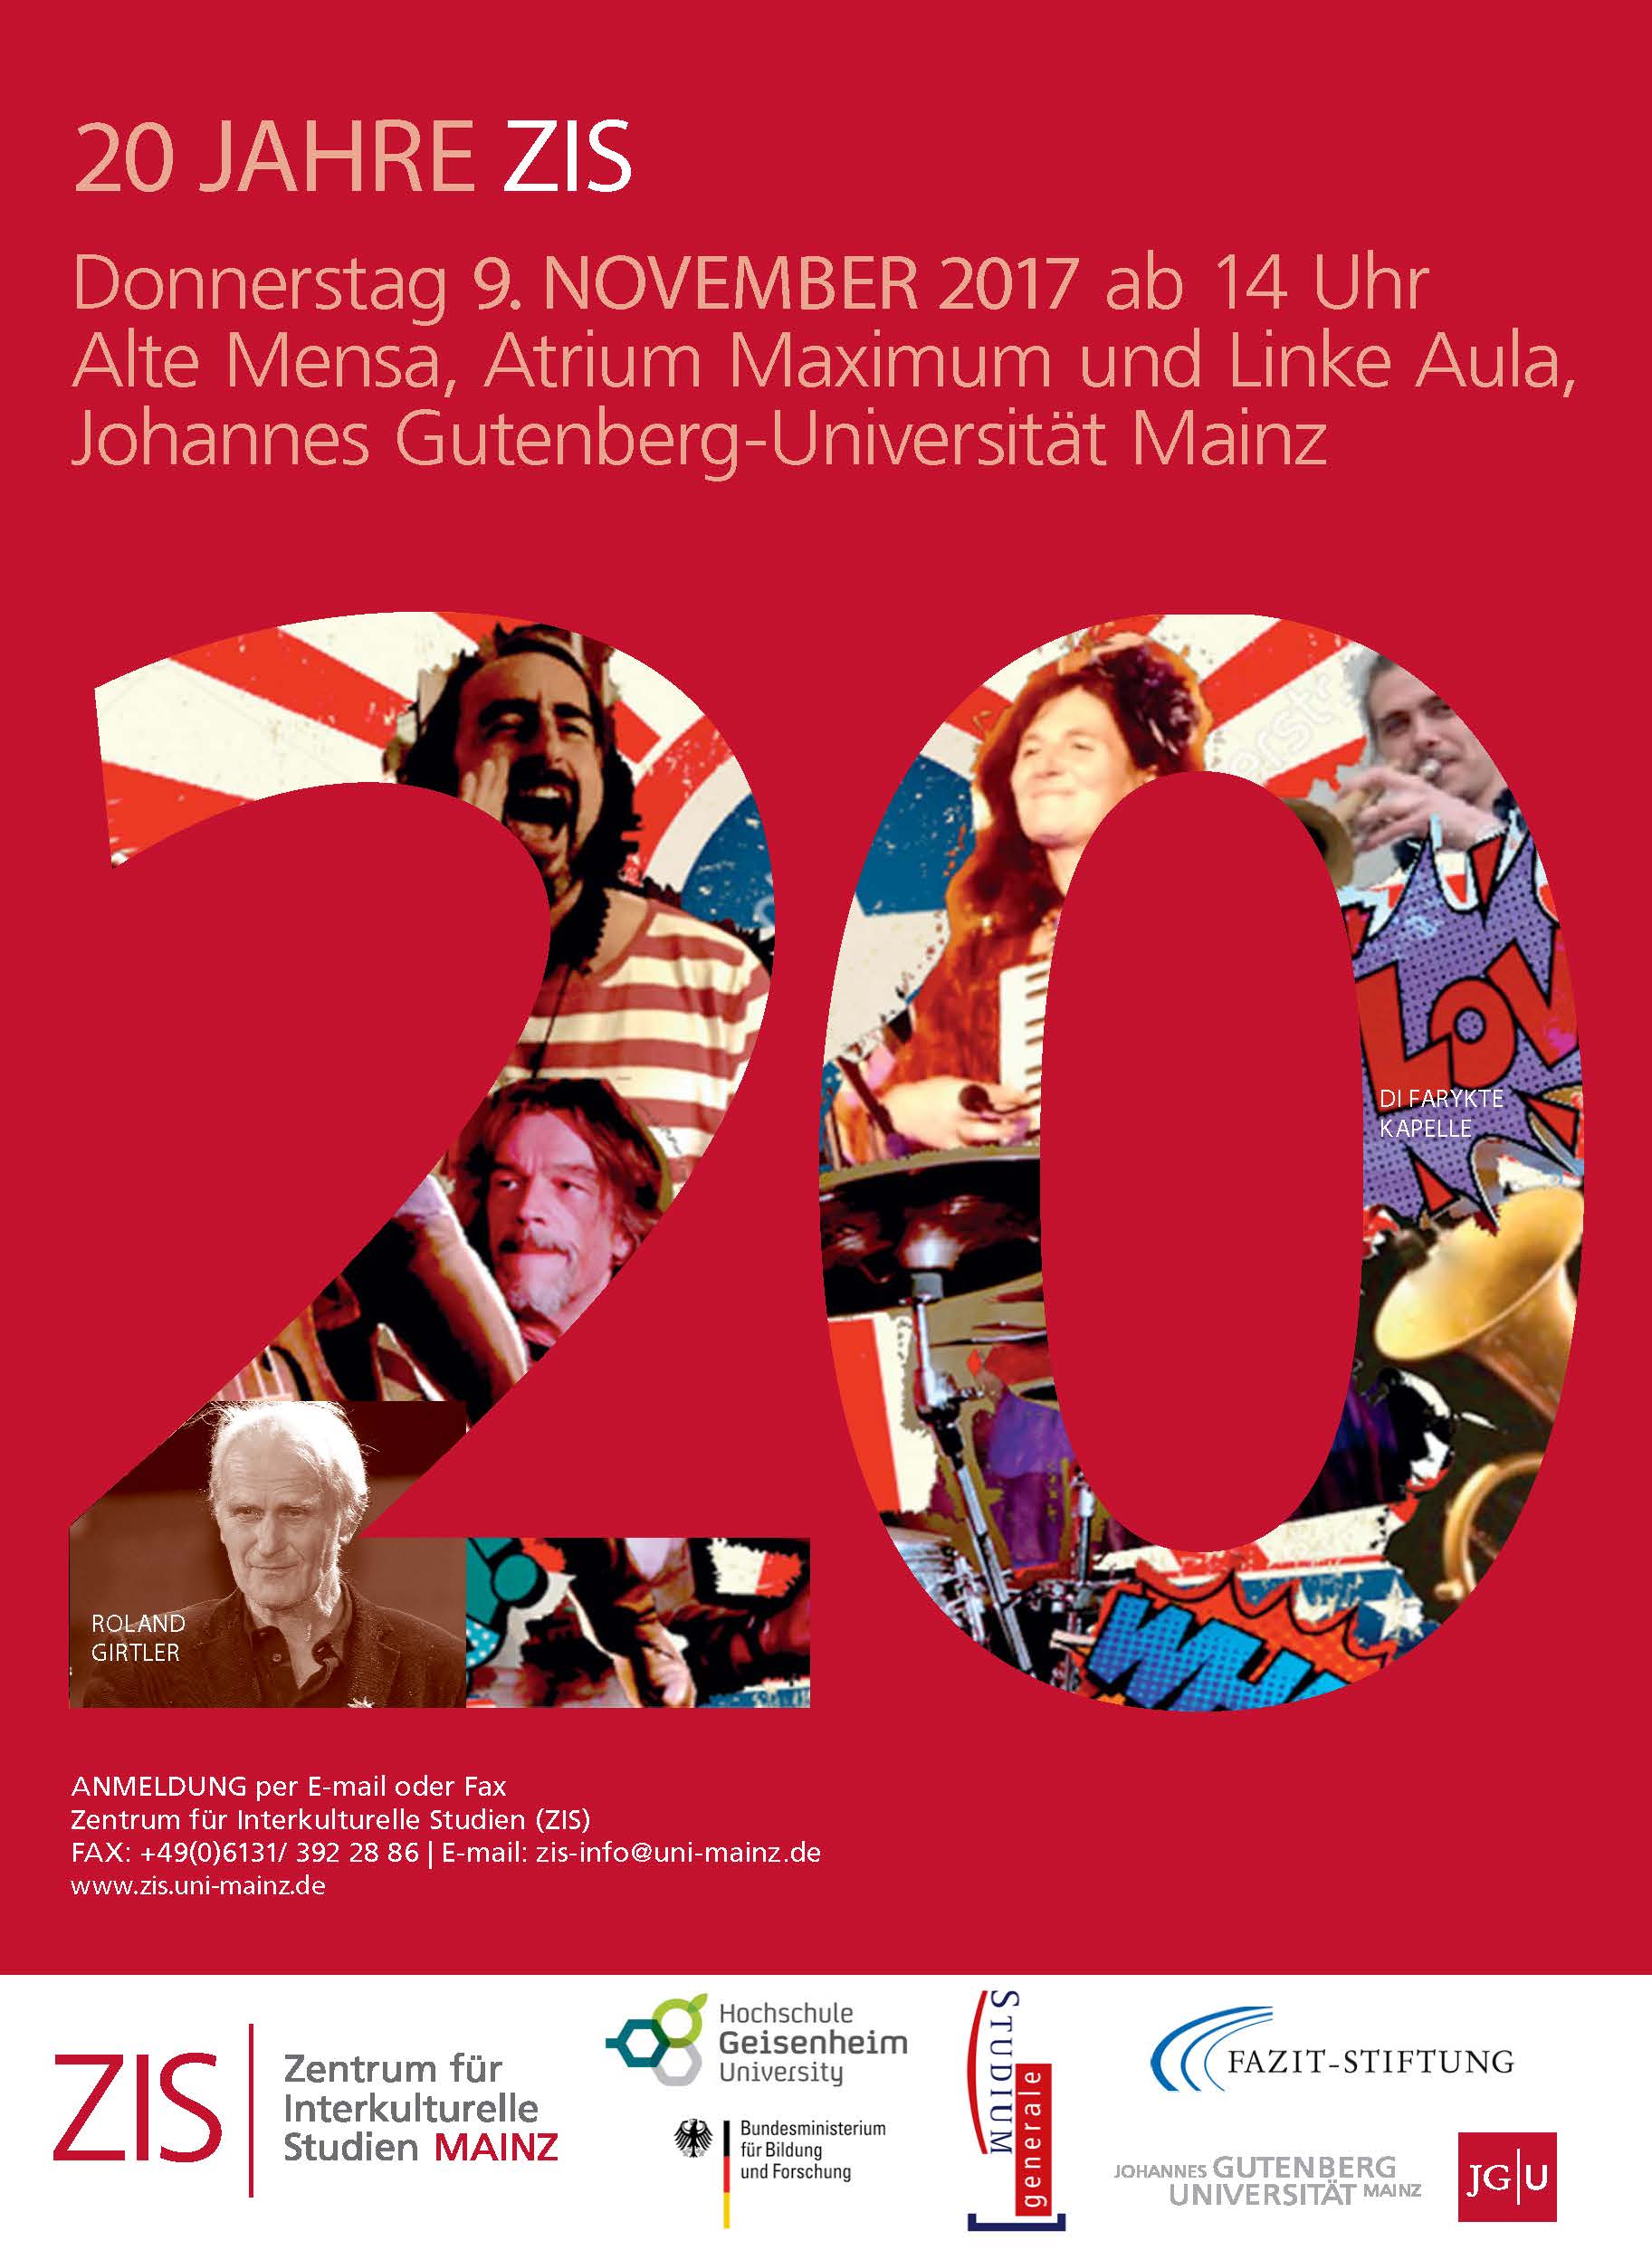 20 Jahre Zis Jubiläum Zentrum Für Interkulturelle Studien Mainz